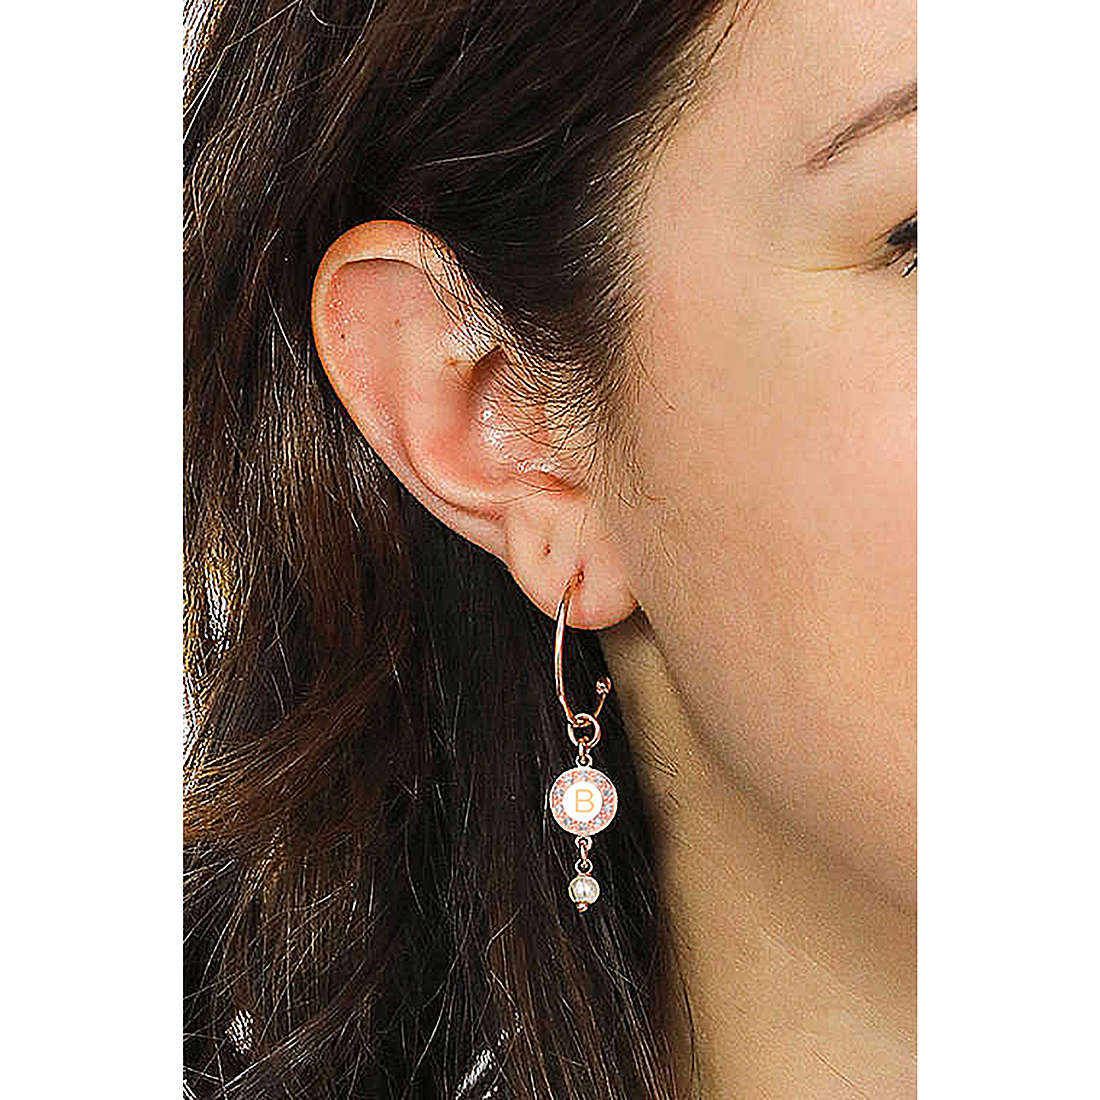 Dvccio earrings Kelly woman OTRESAGR-b wearing